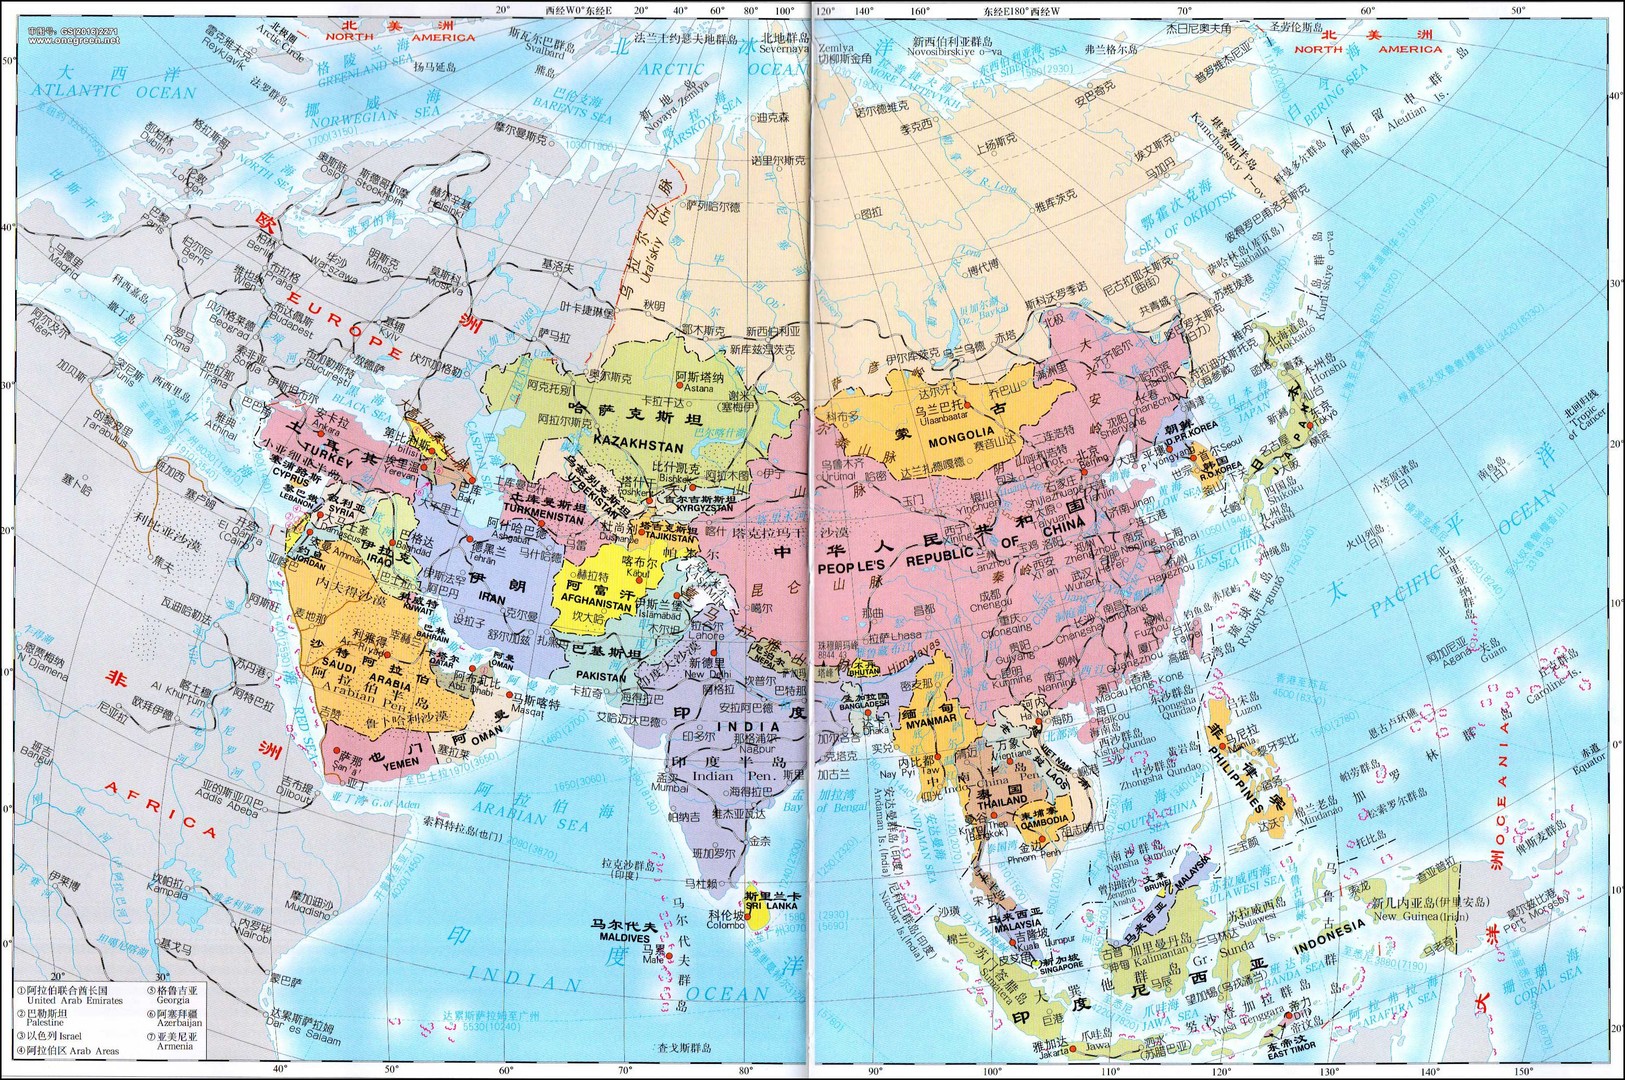 亚洲分布图简单图片